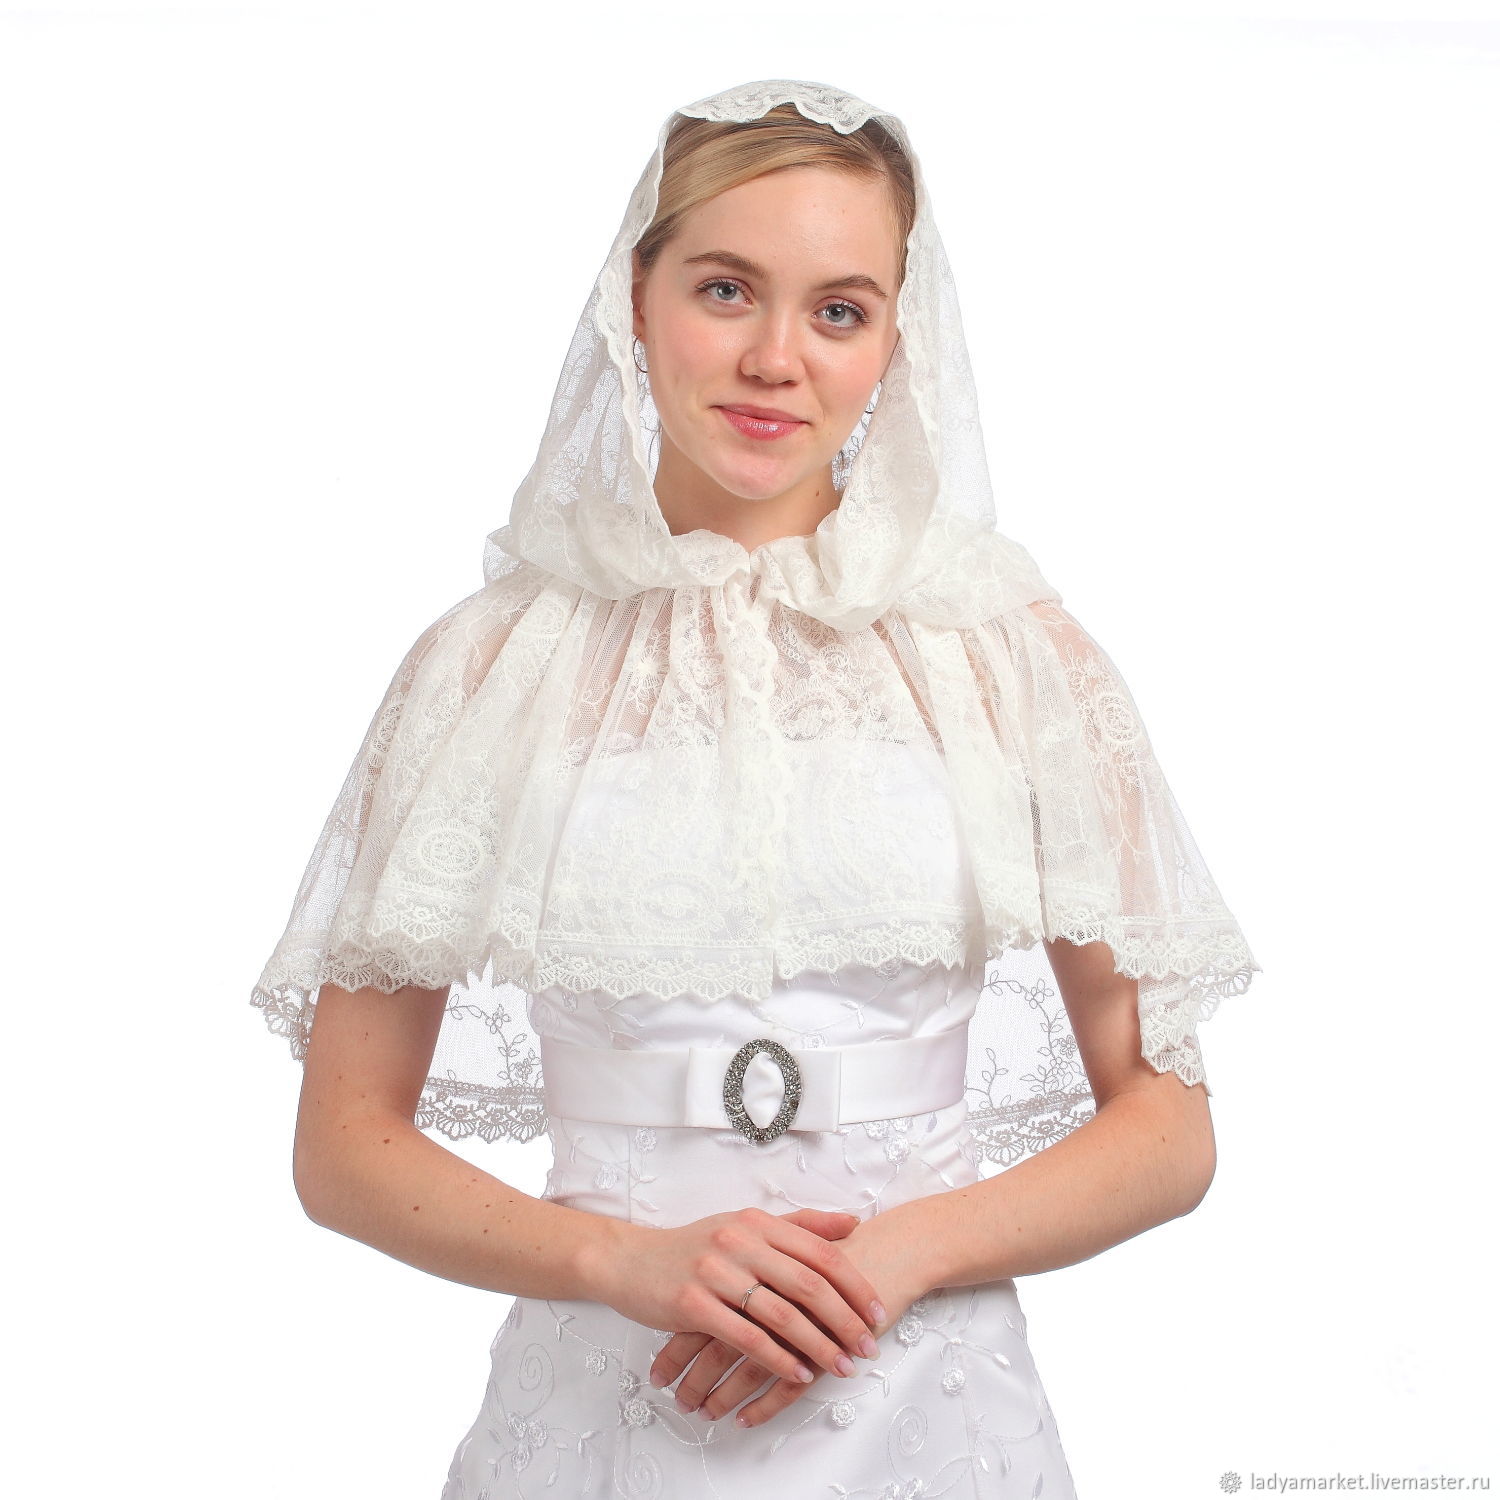 Красивые венчальные платья для церкви